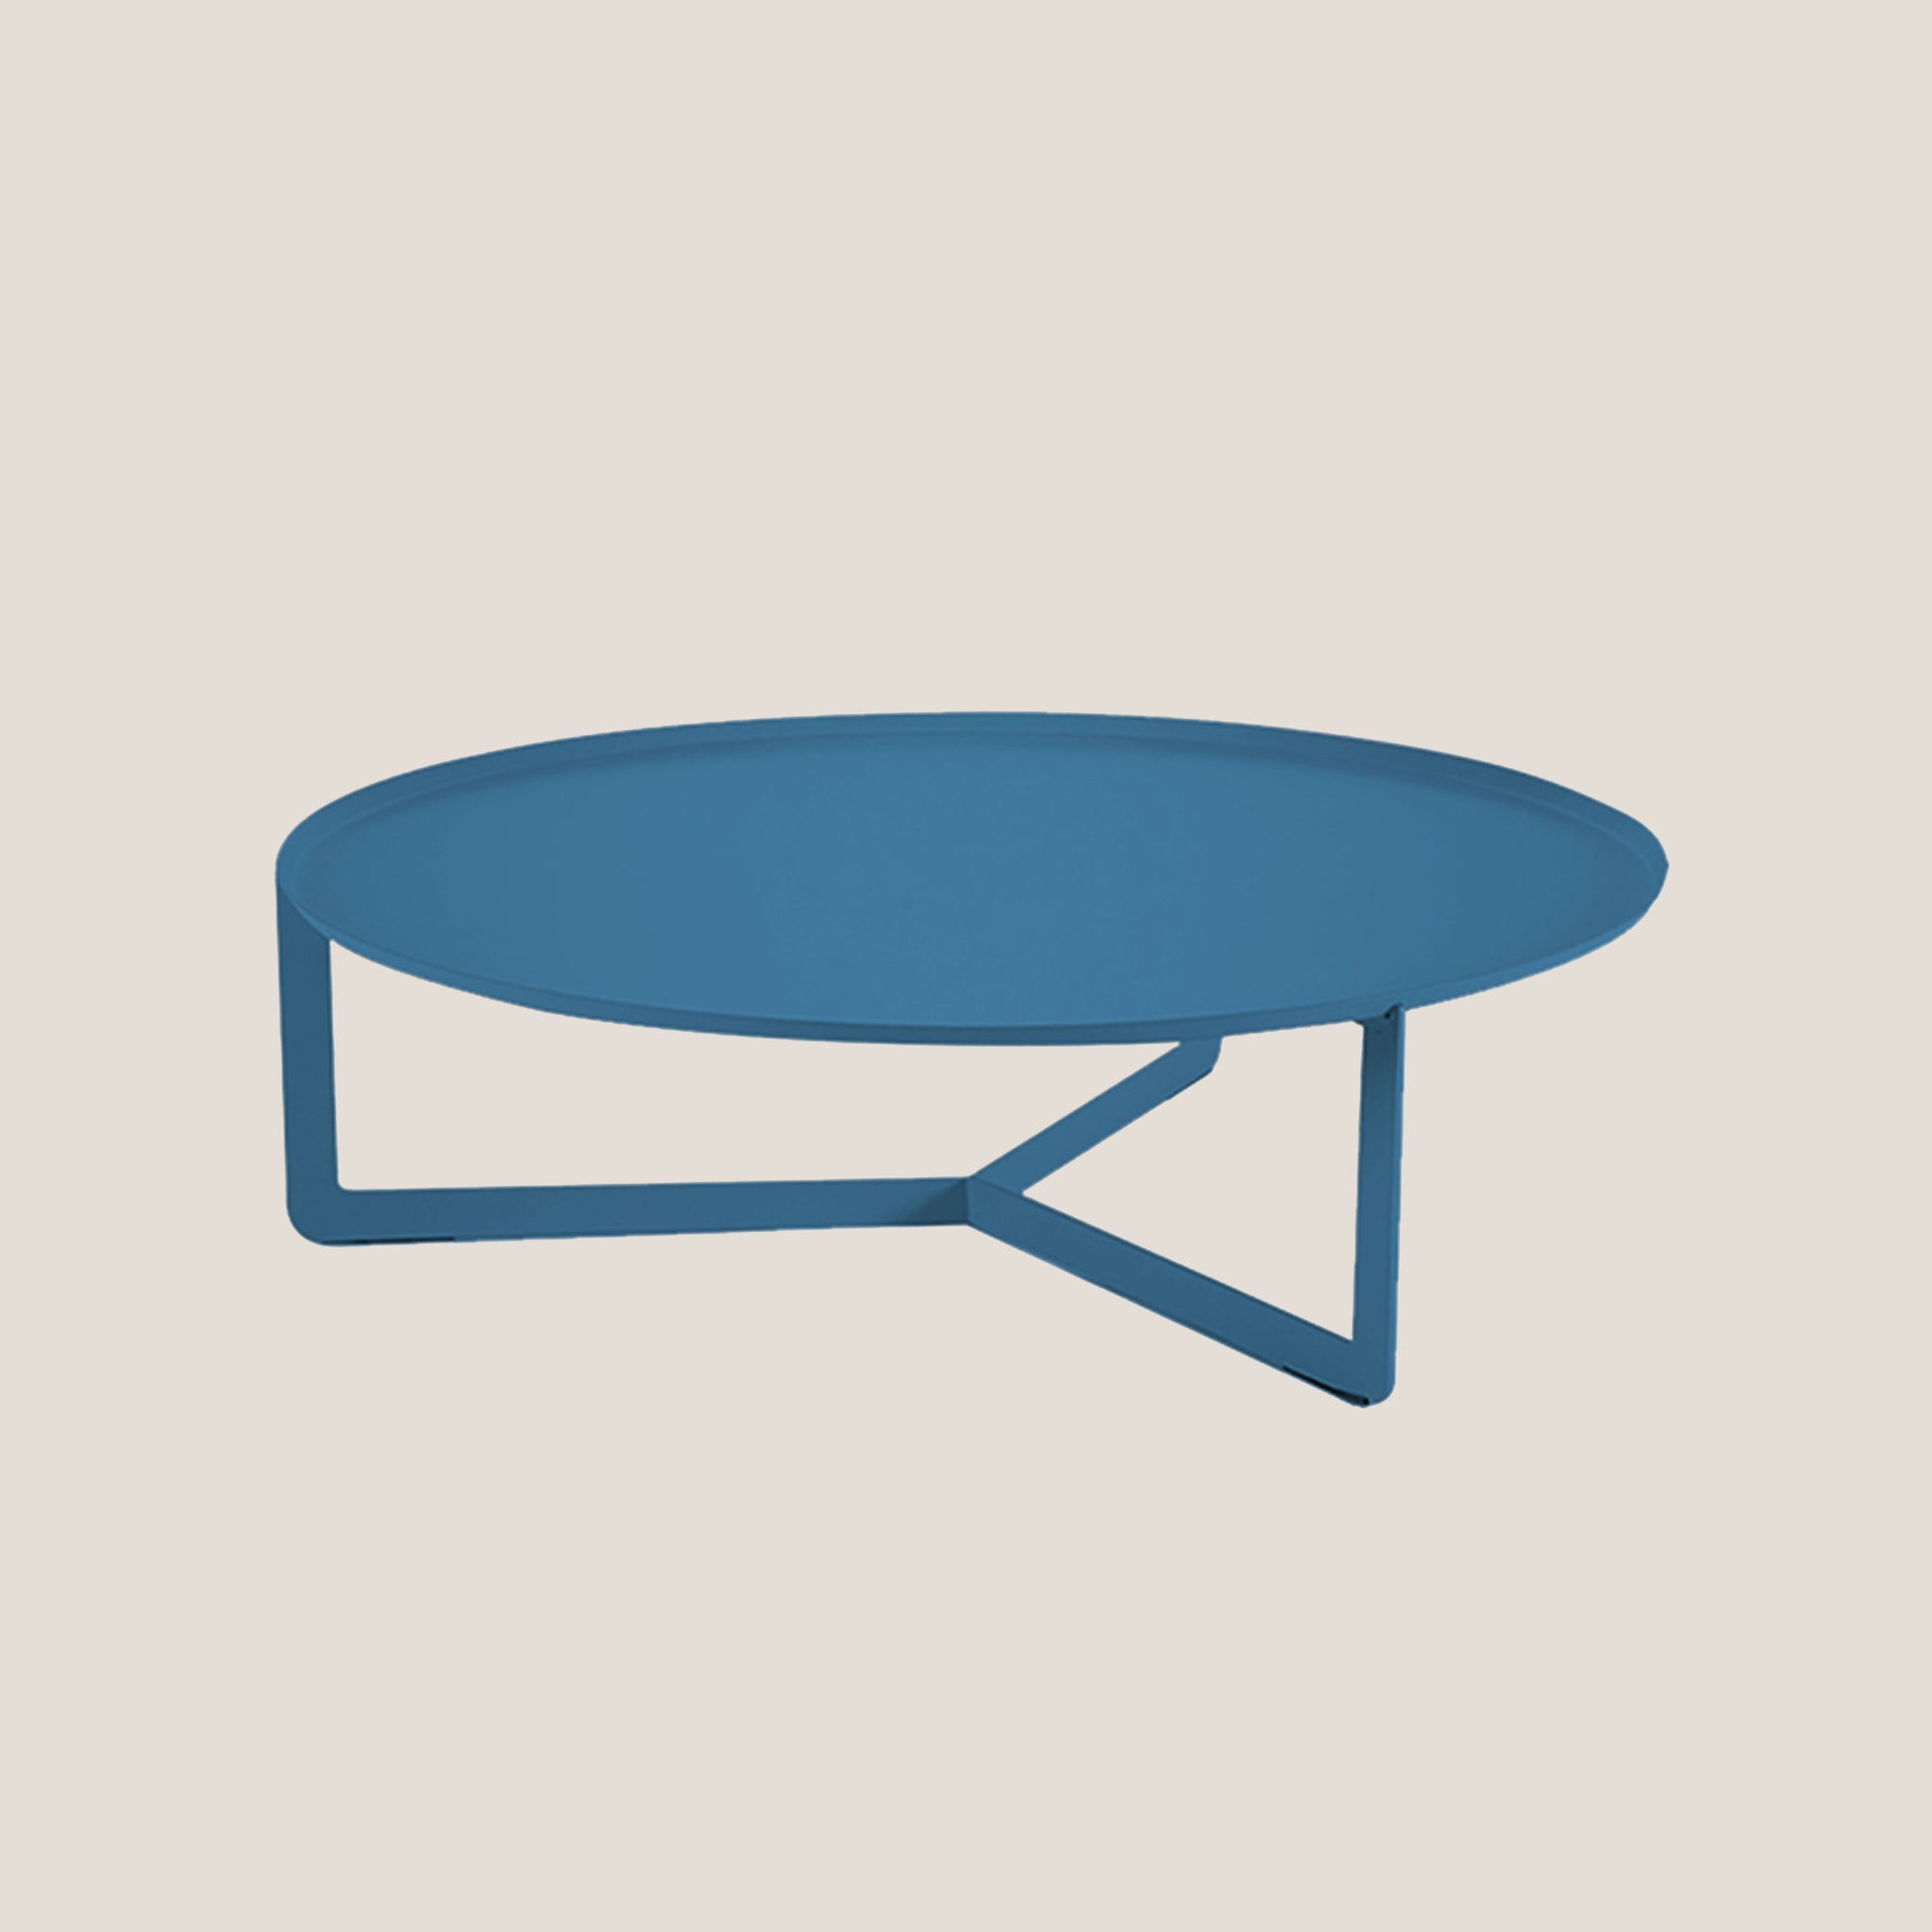 Round tavolino basso rotondo da salotto in metallo h23 cm